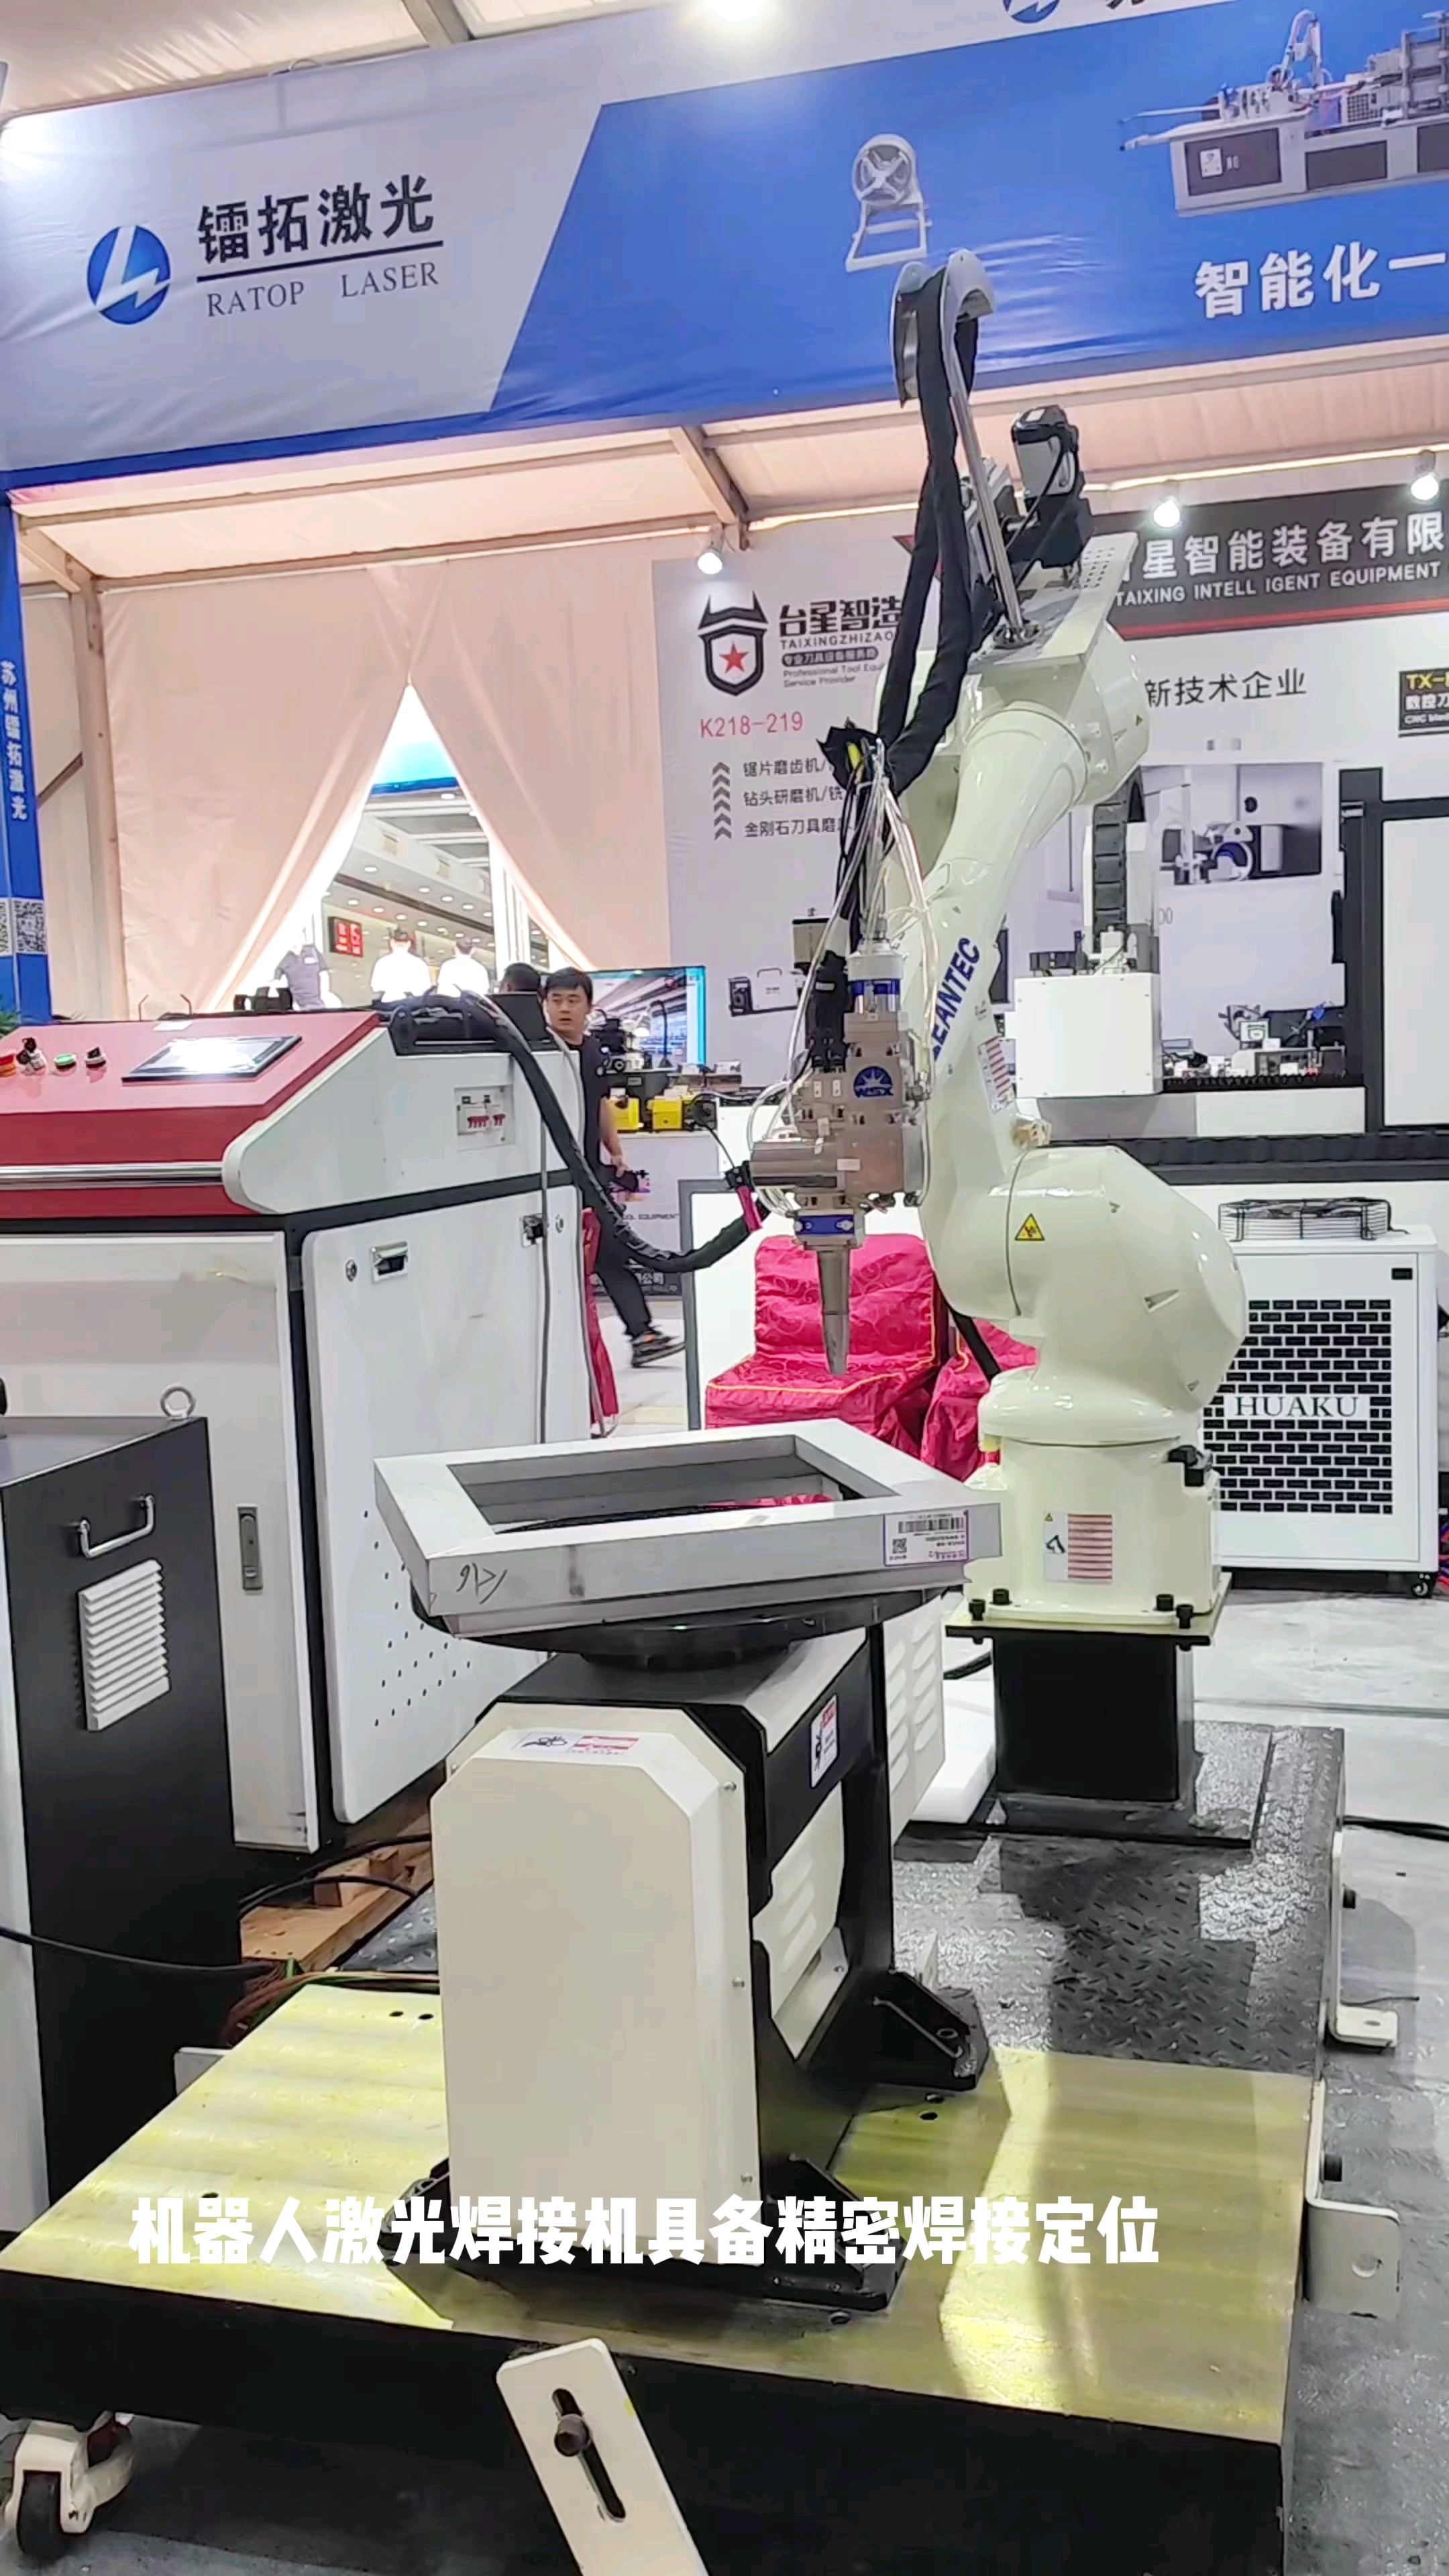 镭拓机器人激光焊接机可用于多种行业#机器人激光焊接机#手臂机器人焊接机#